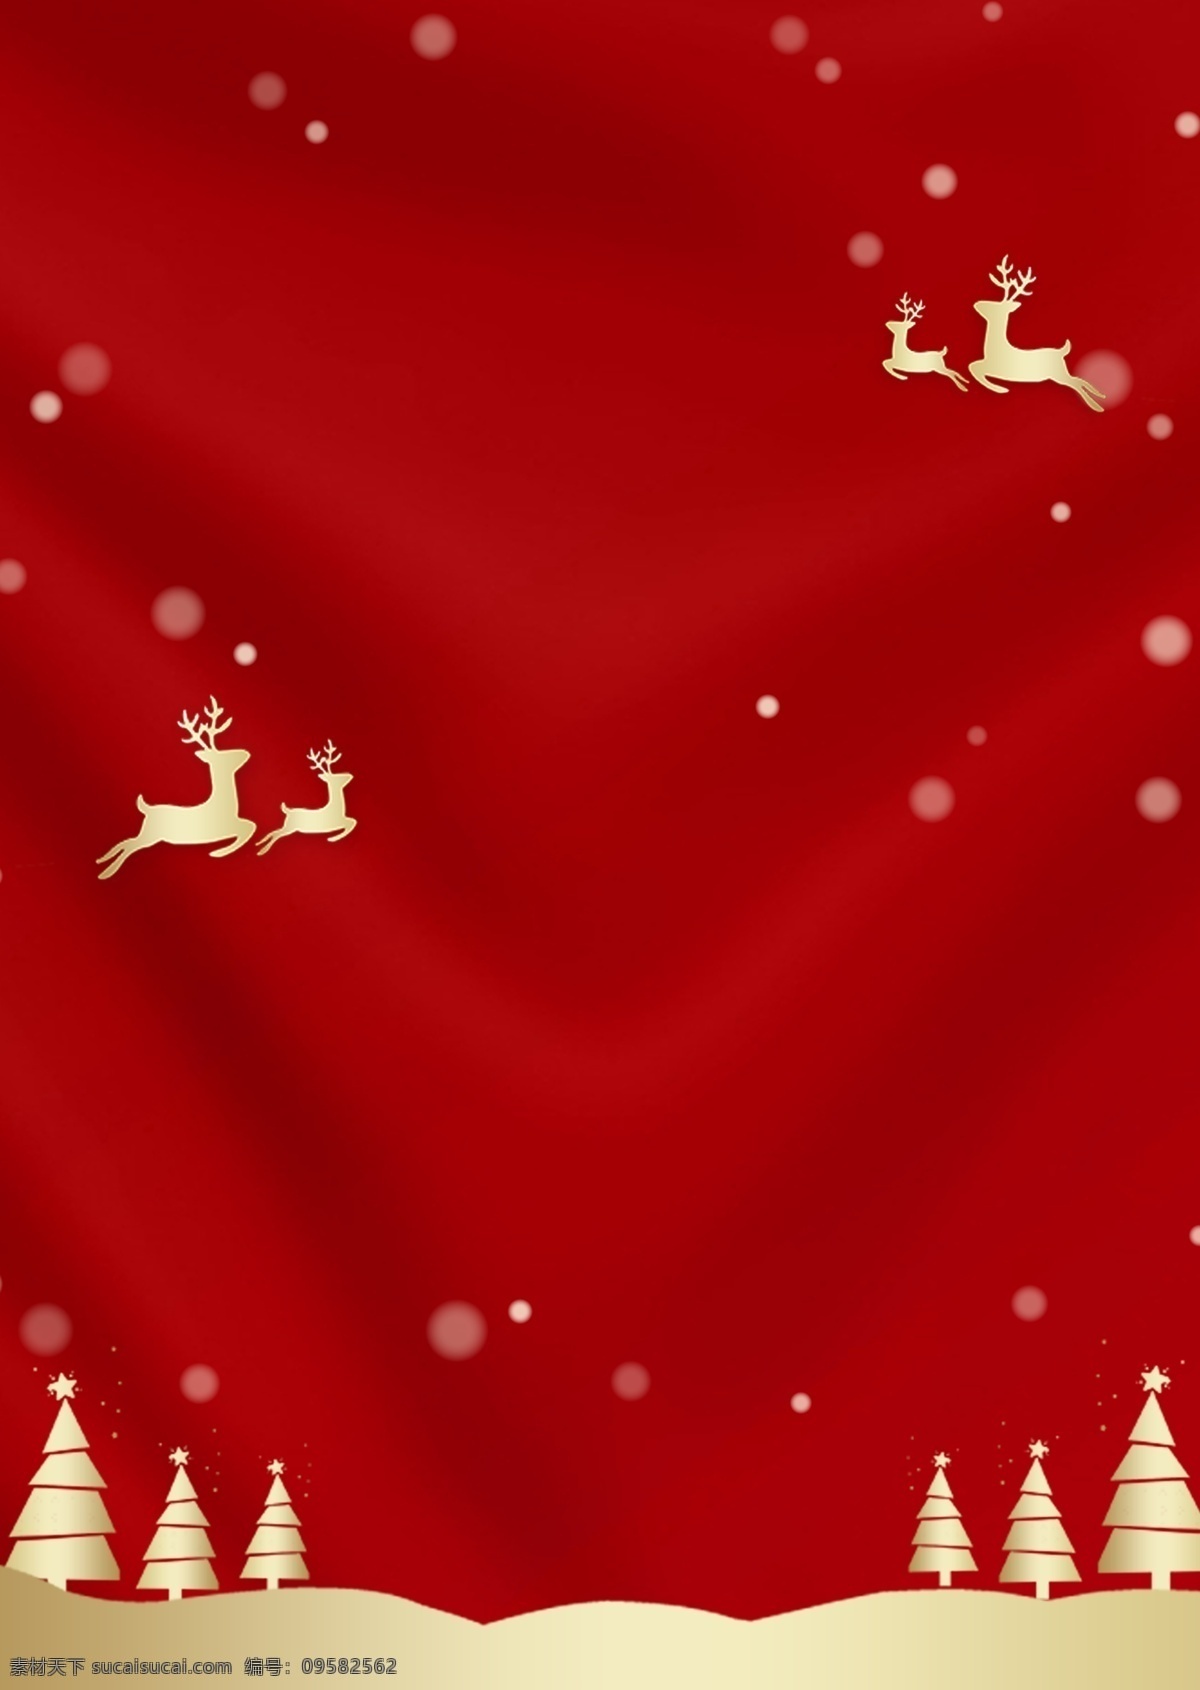 简约 红色 圣诞节 促销 背景 圣诞背景 圣诞树 麋鹿 圣诞主题 圣诞背景素材 圣诞展板 圣诞促销